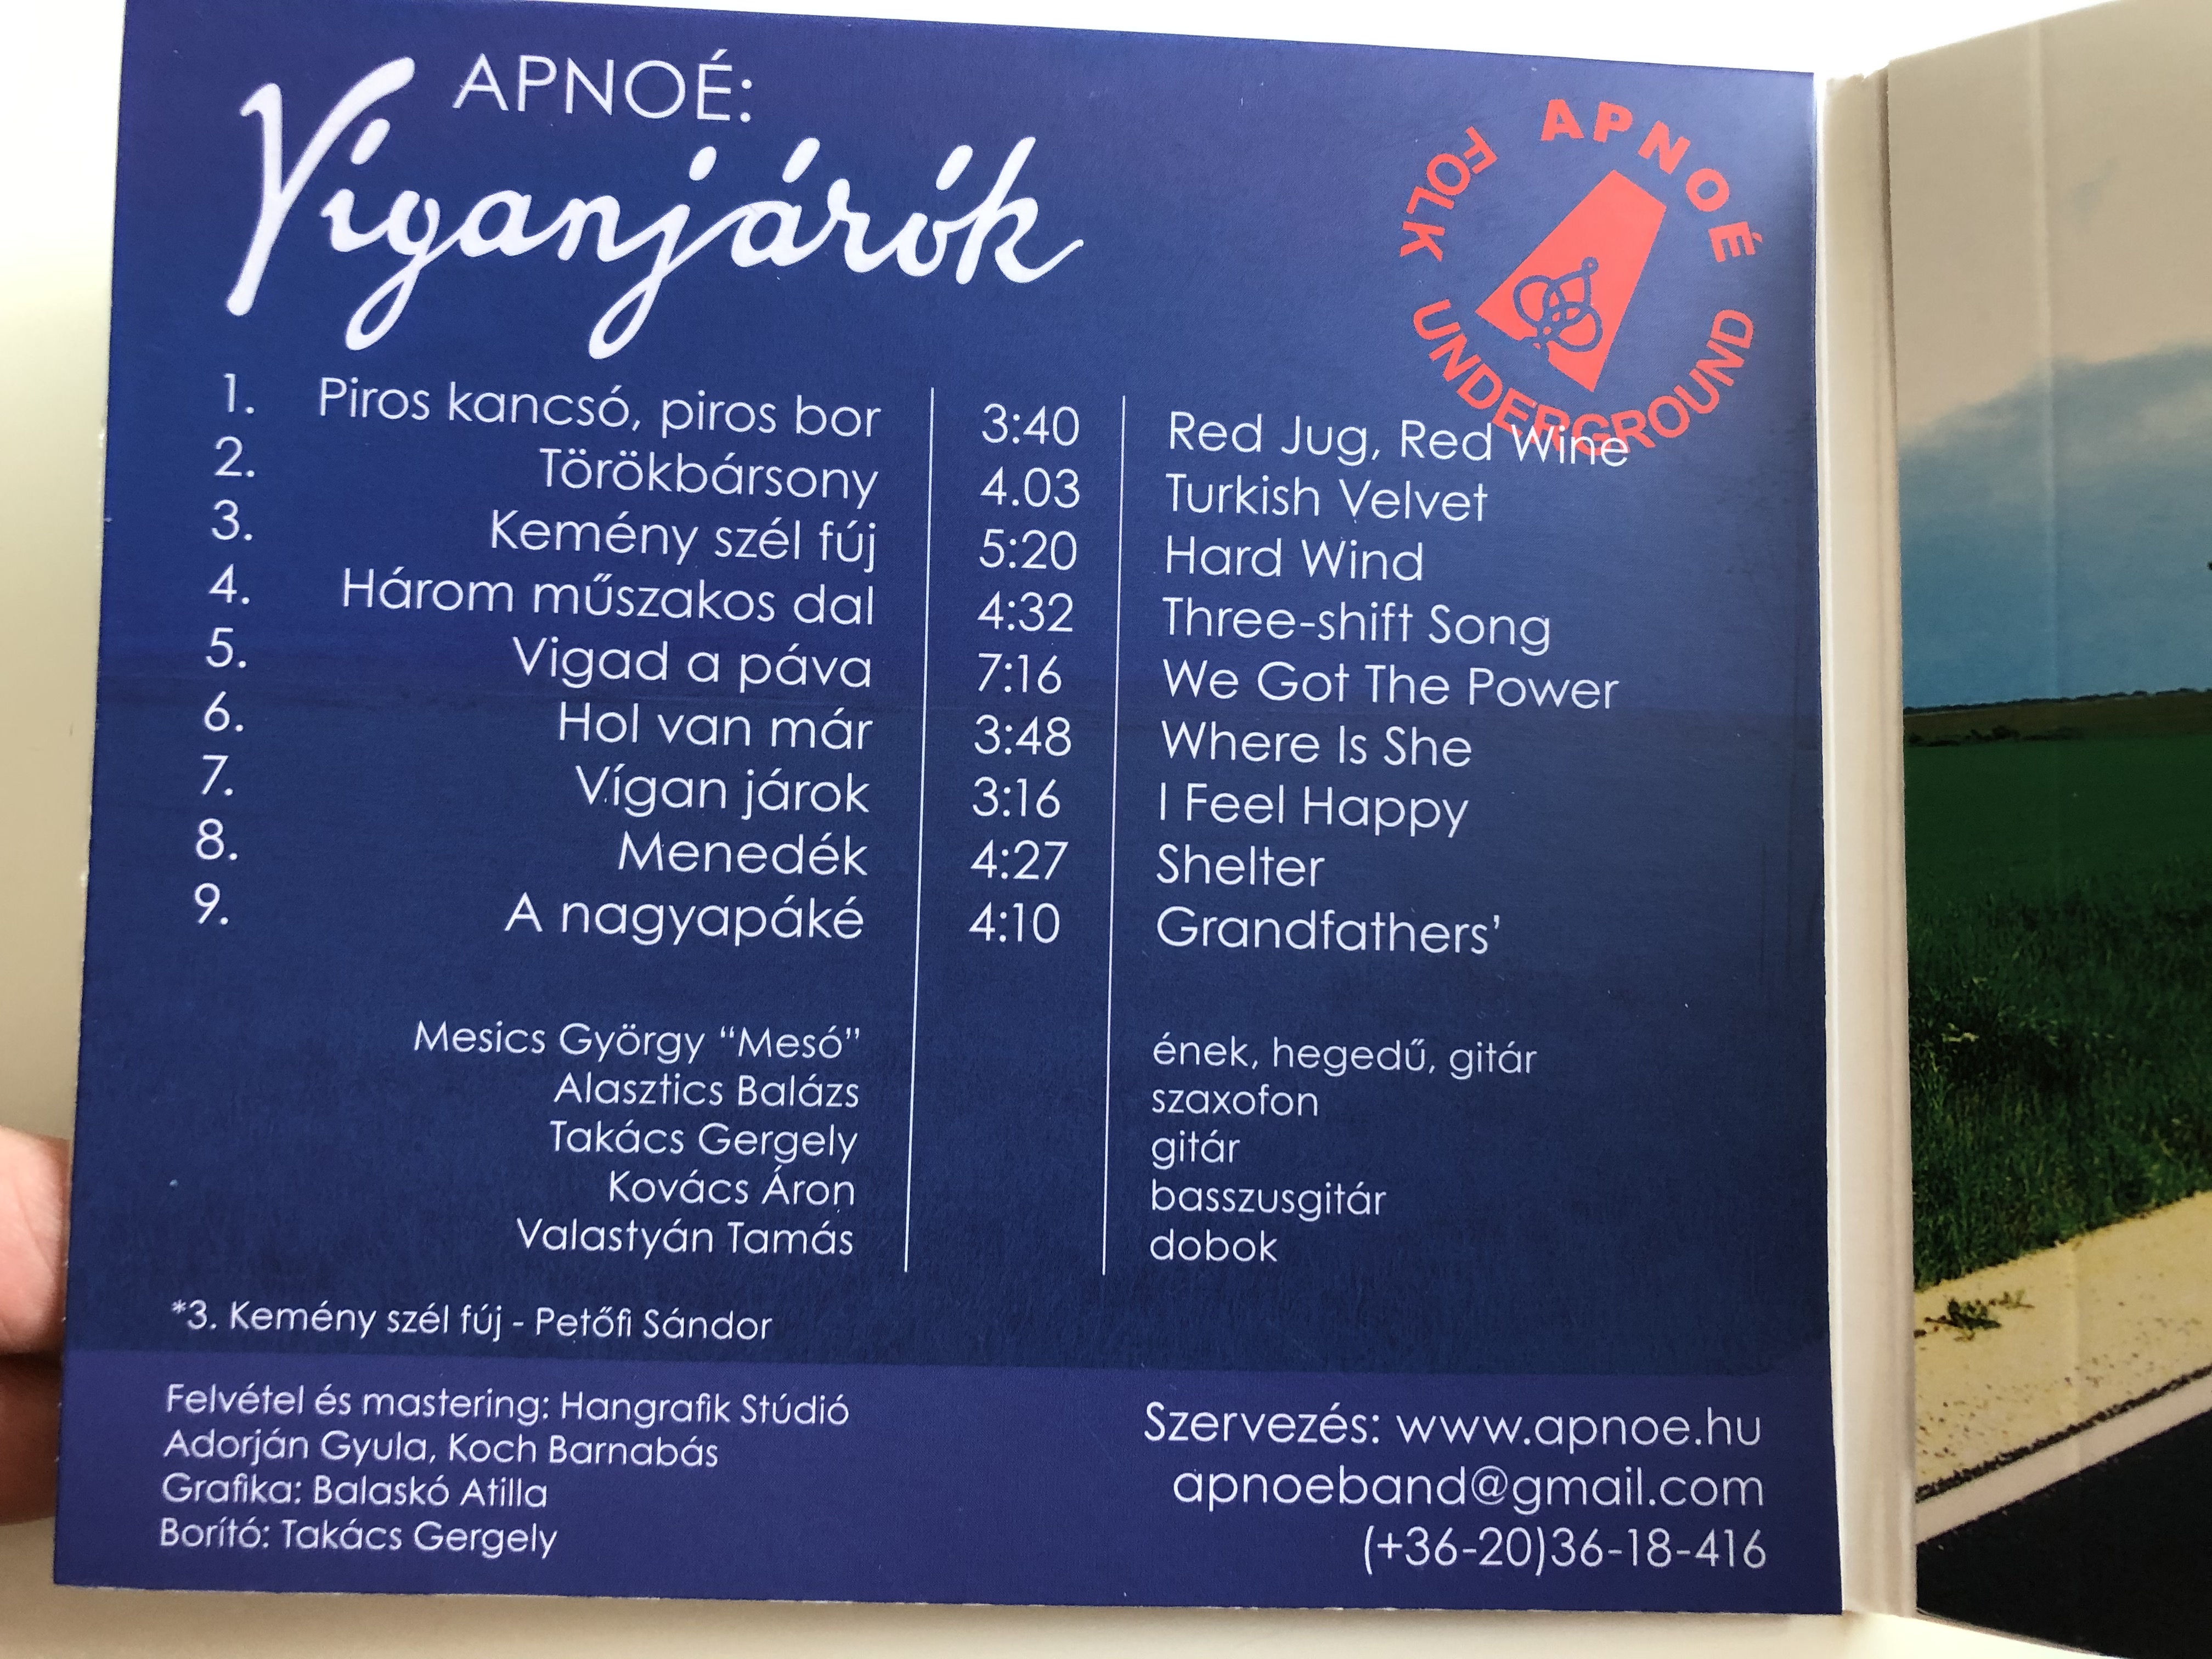 apnoe-viganjarok-gryllus-audio-cd-2014-gcd-138-2-.jpg